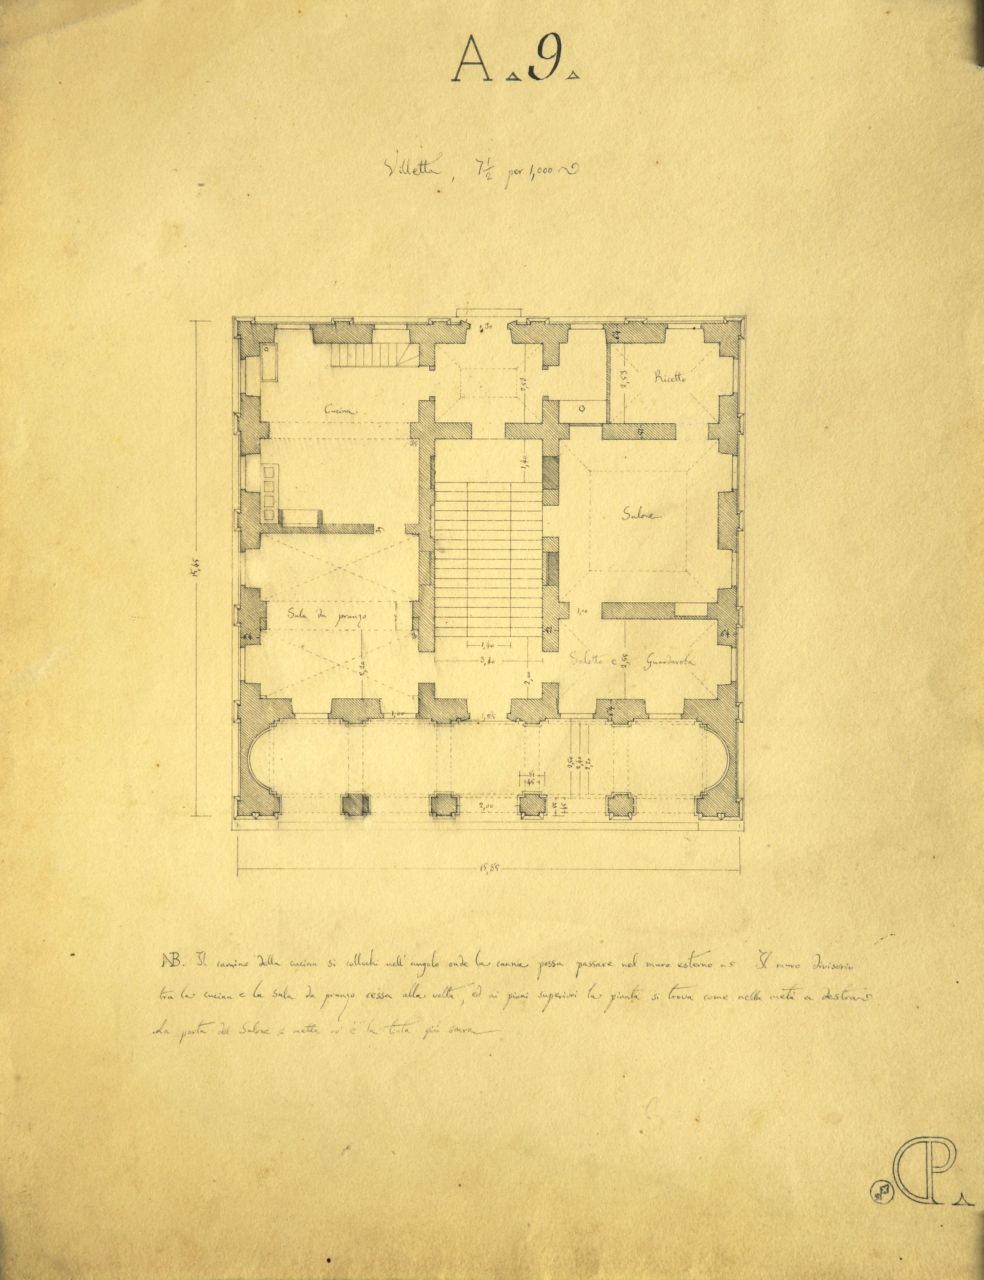 Villetta, Pianta quotata del piano terreno di "villetta" (disegno architettonico) di Promis Carlo (secondo quarto sec. XIX)